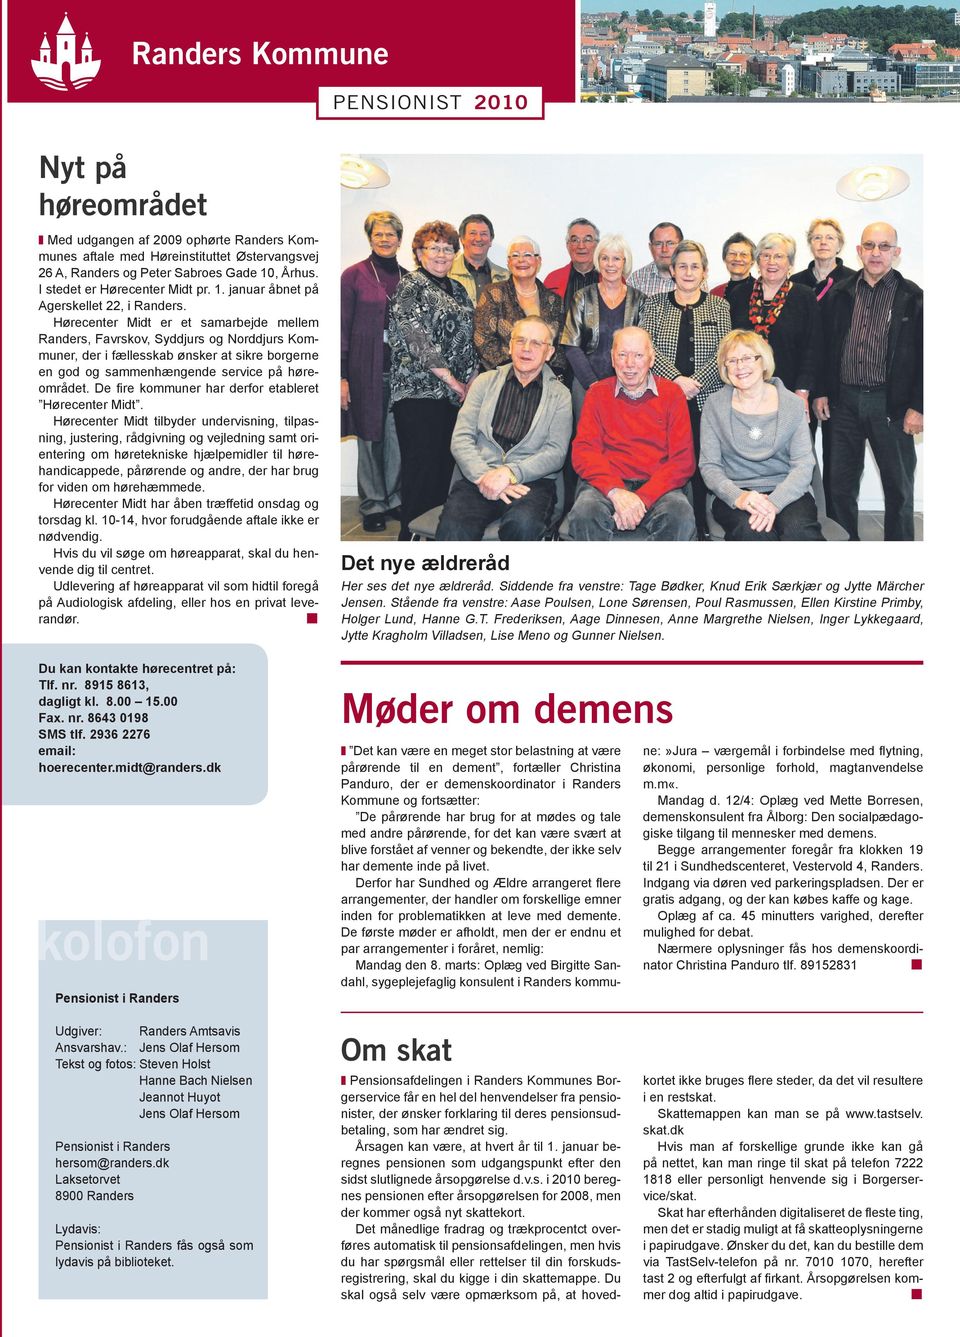 Hørecenter Midt er et samarbejde mellem Randers, Favrskov, Syddjurs og Norddjurs Kommuner, der i fællesskab ønsker at sikre borgerne en god og sammenhængende service på høreområdet.